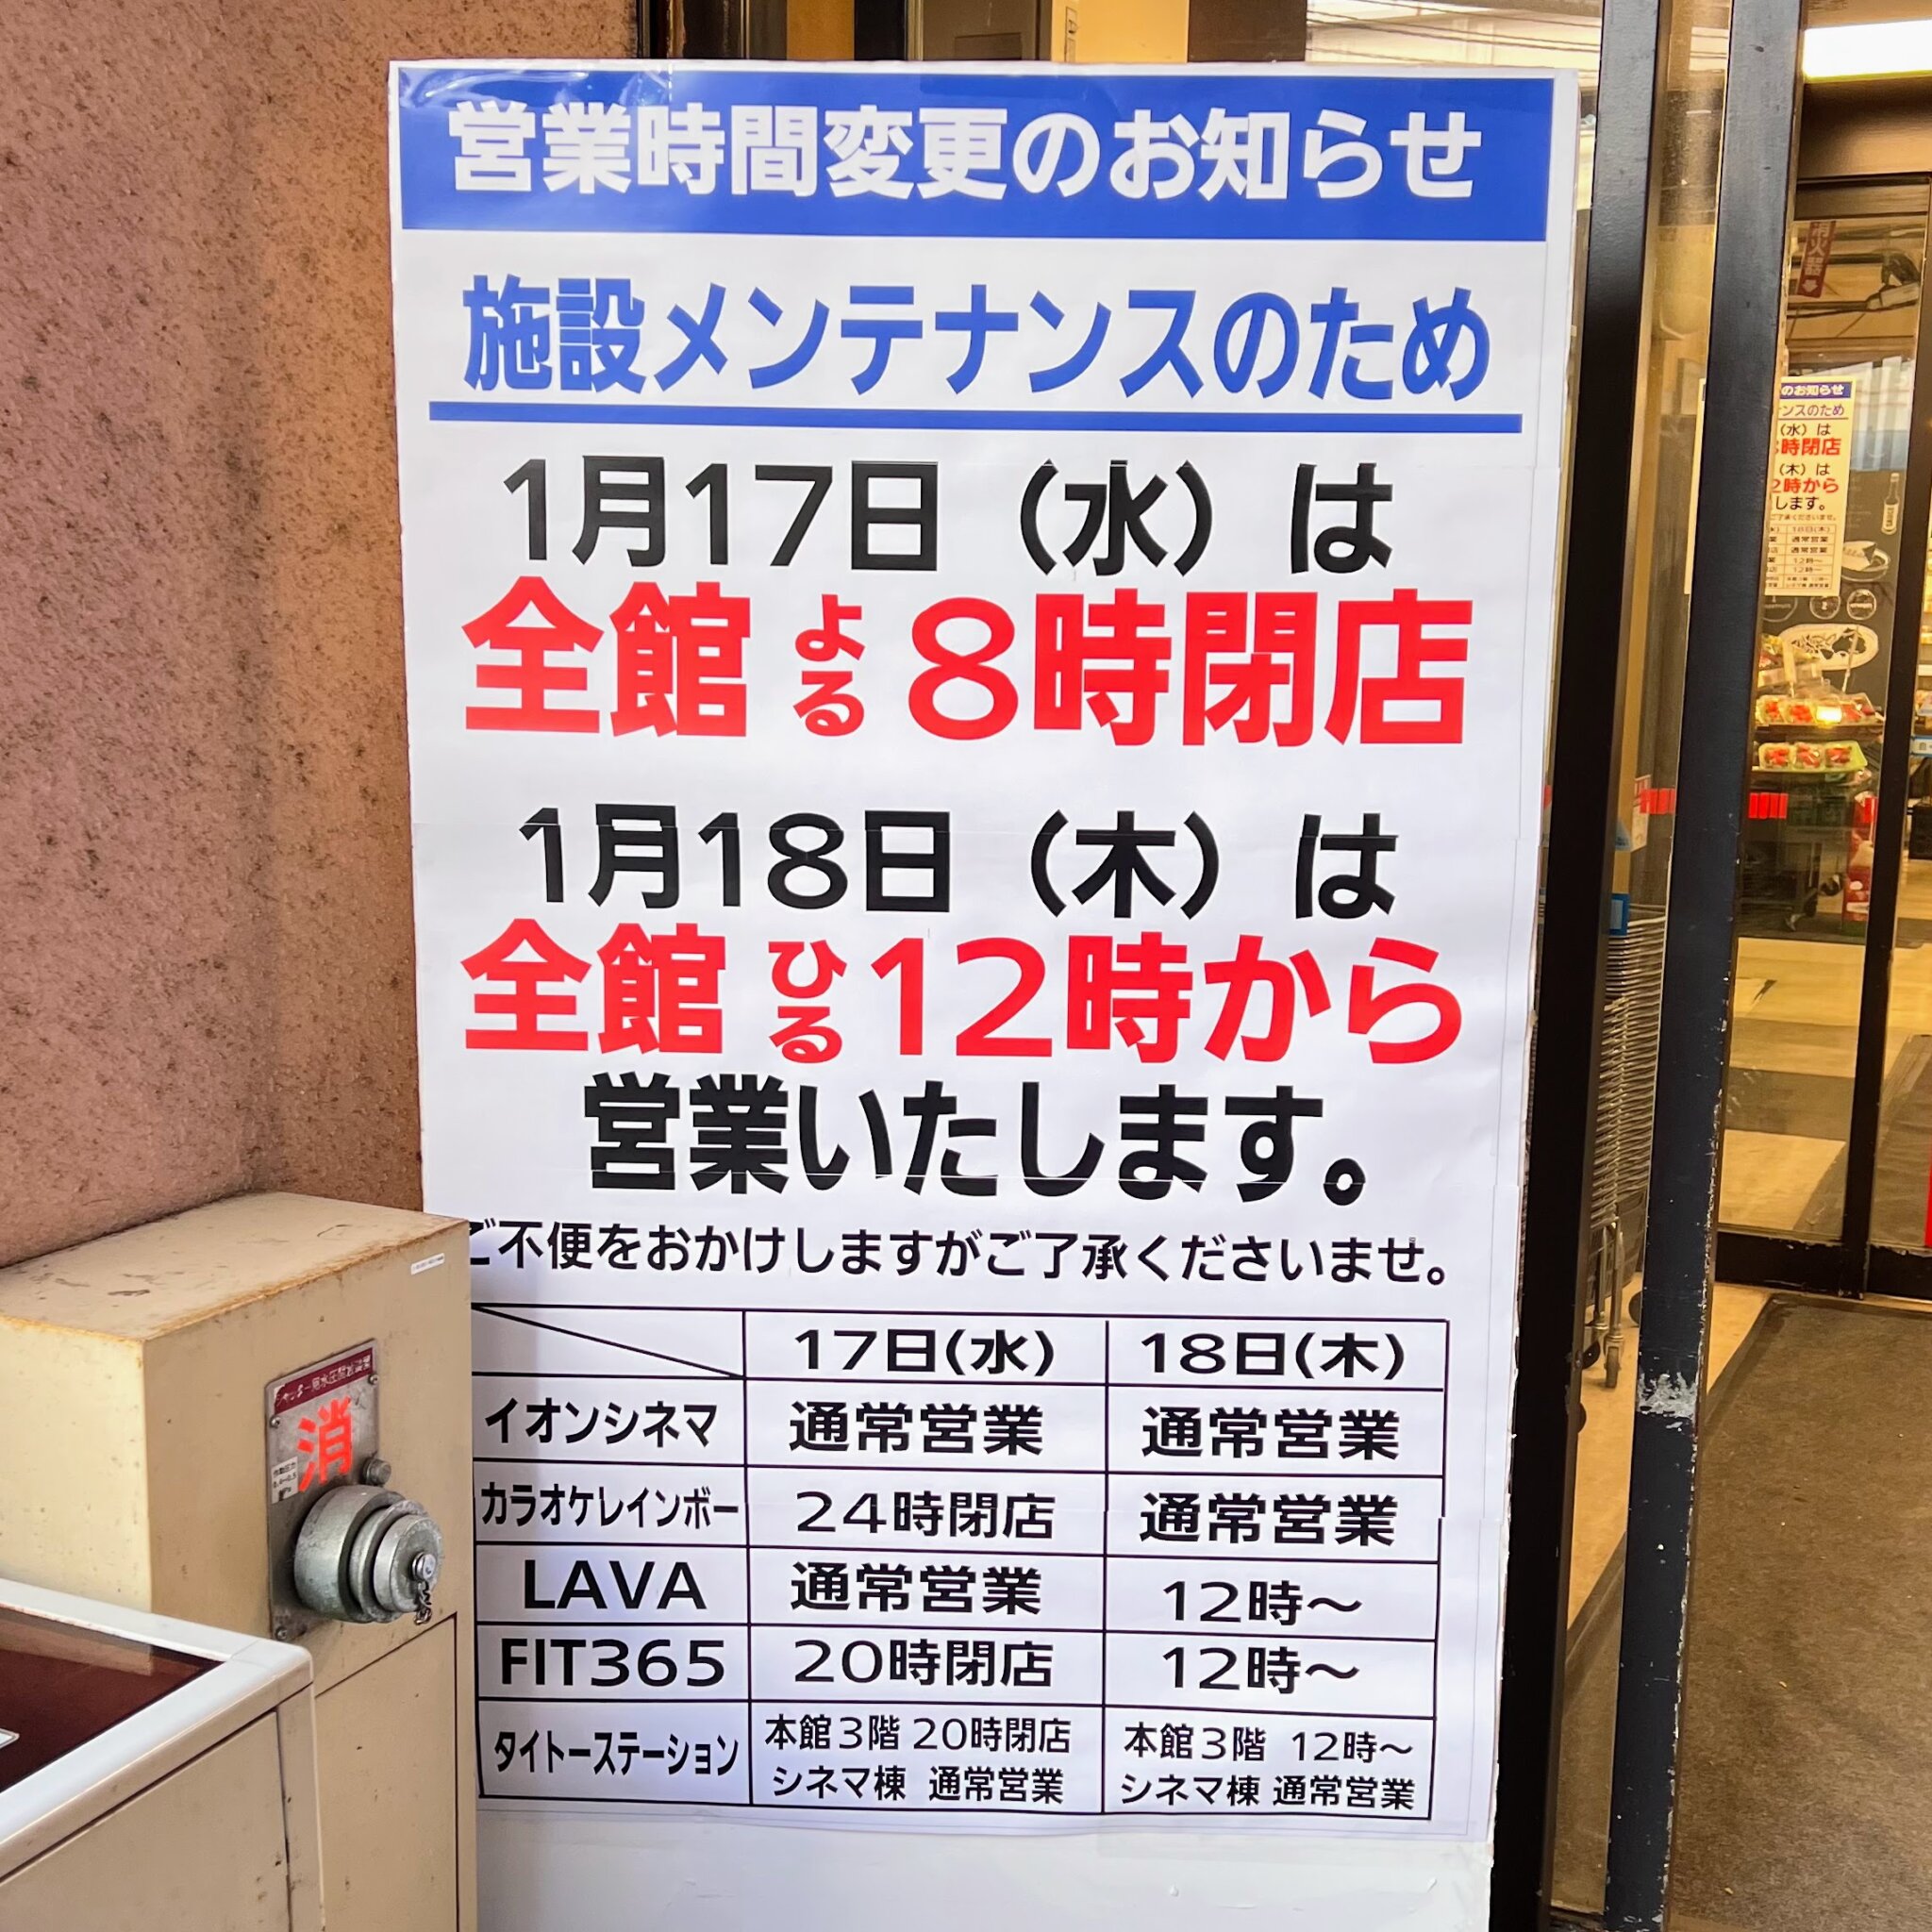 イオン加古川店の施設メンテナンスのため営業時間変更のお知らせ